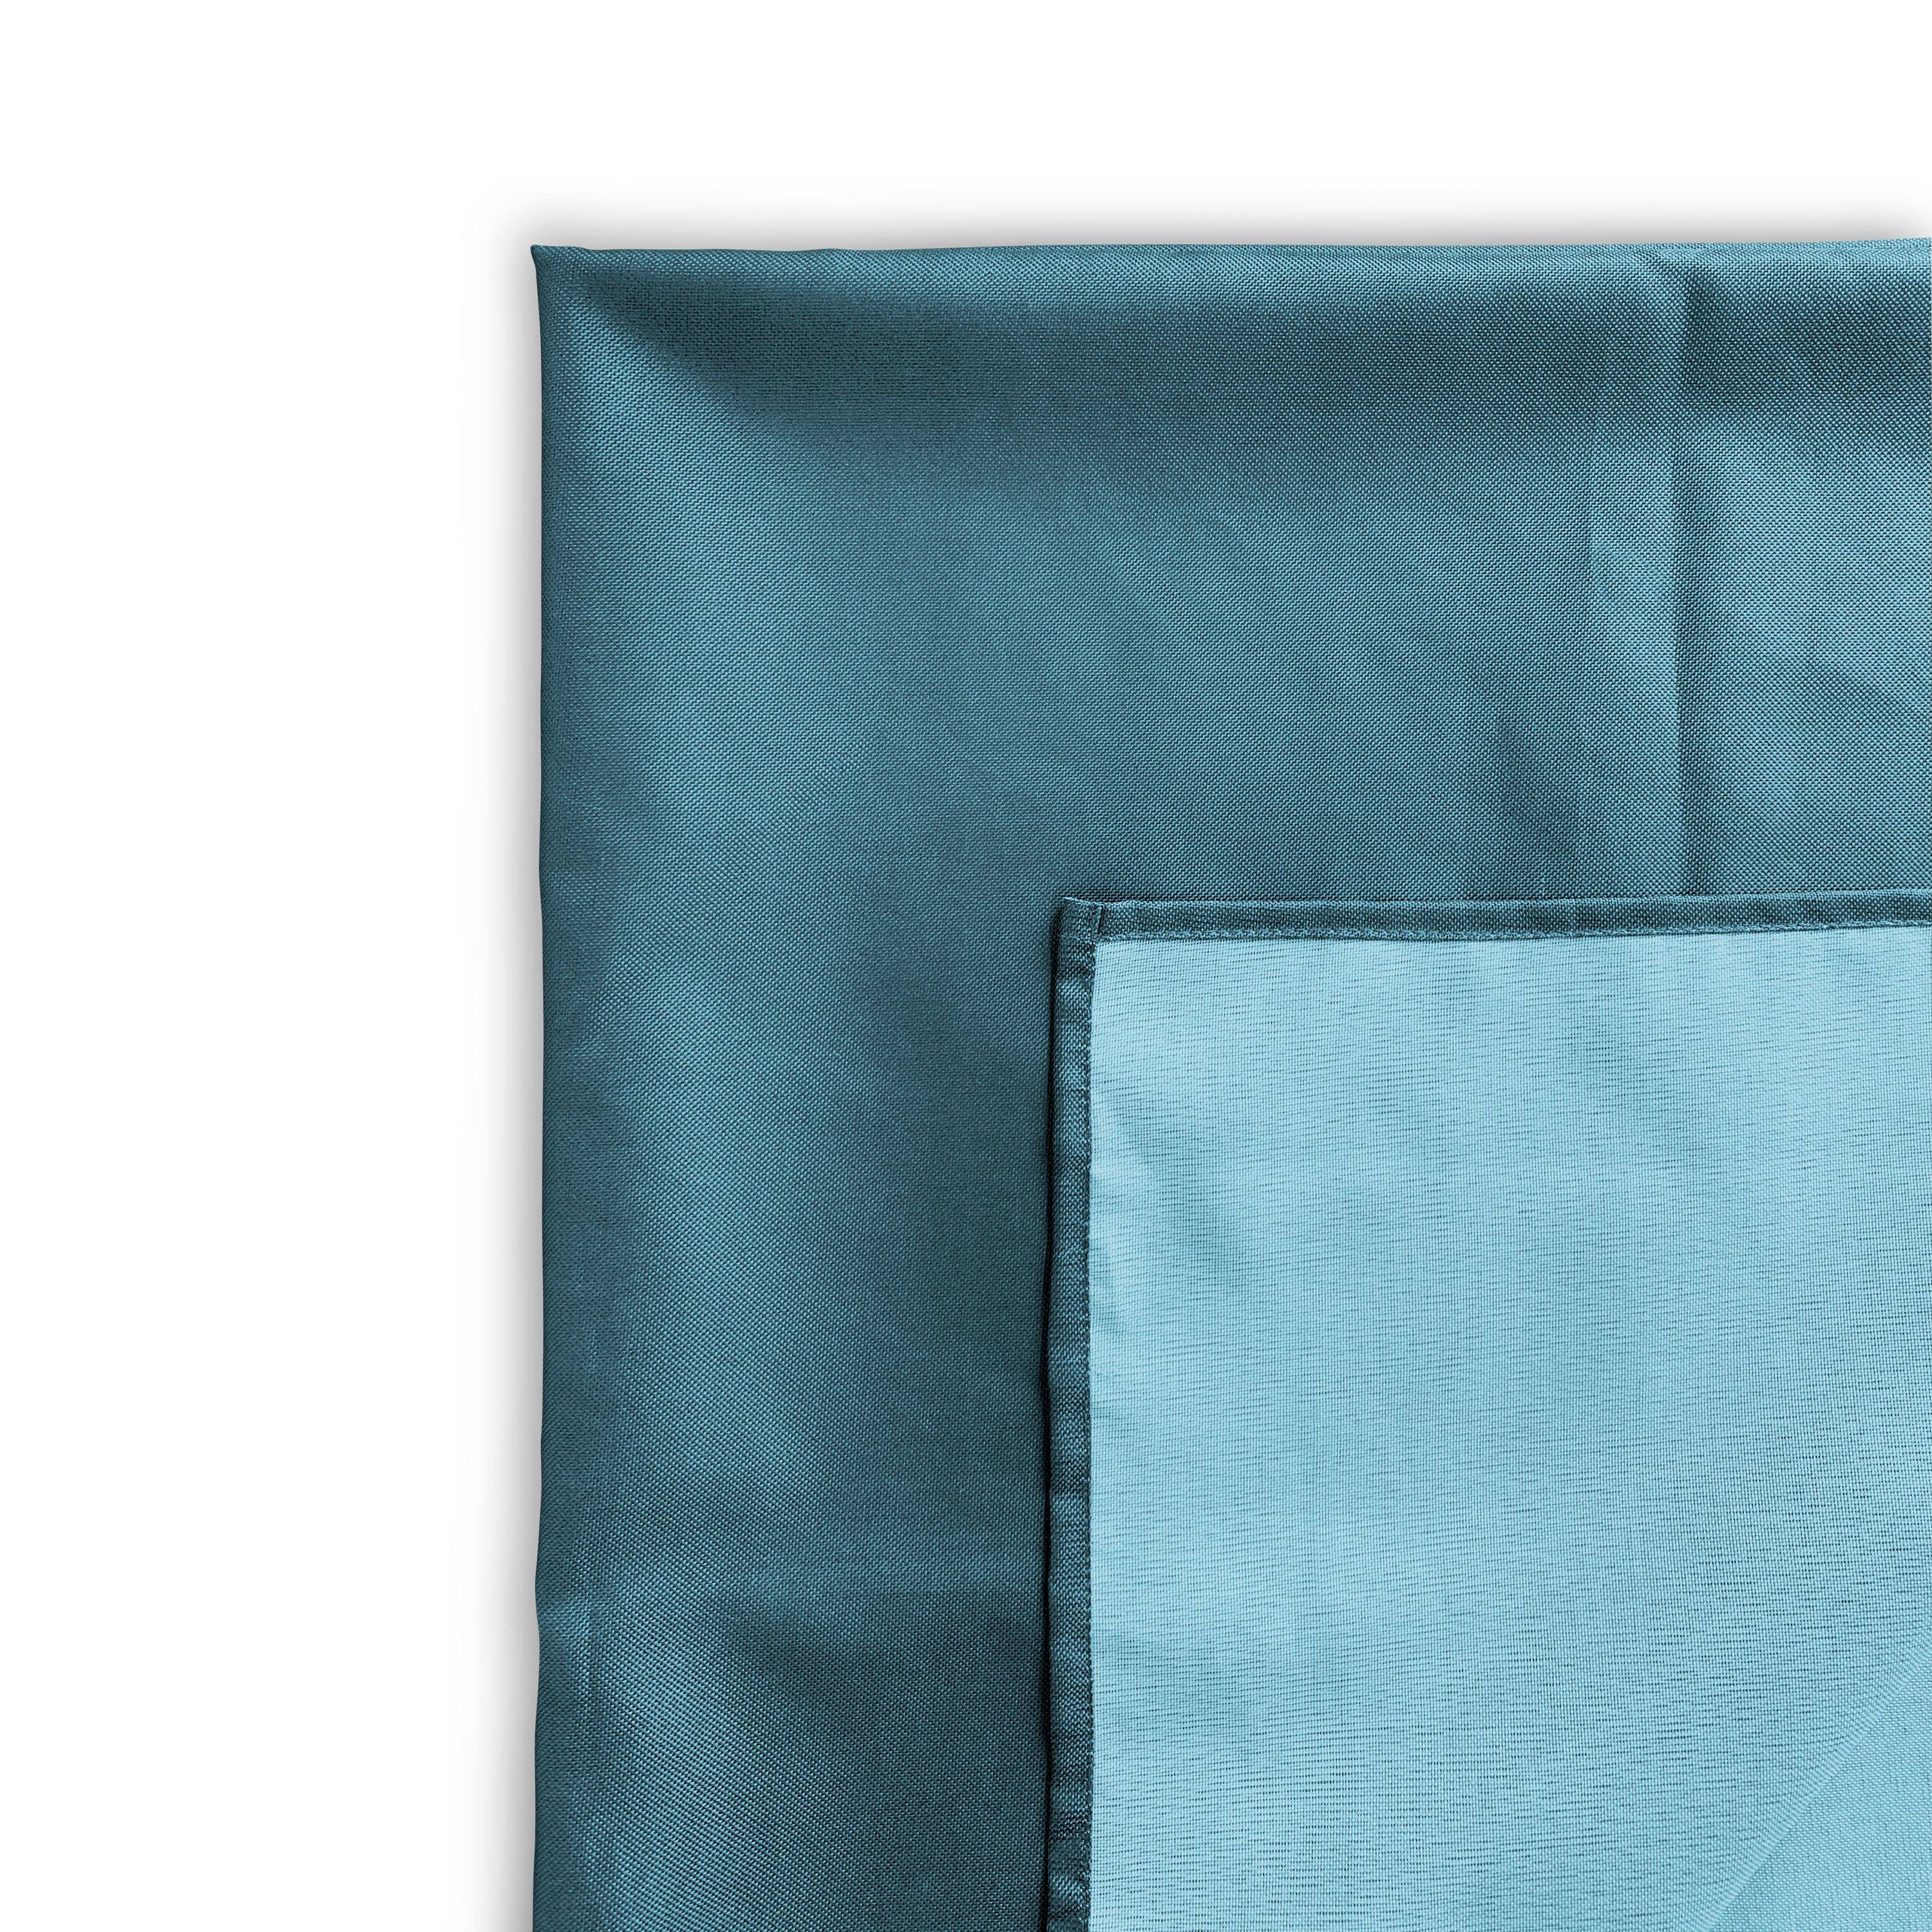 Kollection EXOTIQUE - Outdoor-Tischdecke 140 x 240 cm Entenblau, 100% Polyester, schützt den Tisch, UV-Schutz, sommerlicher Stil Photo3